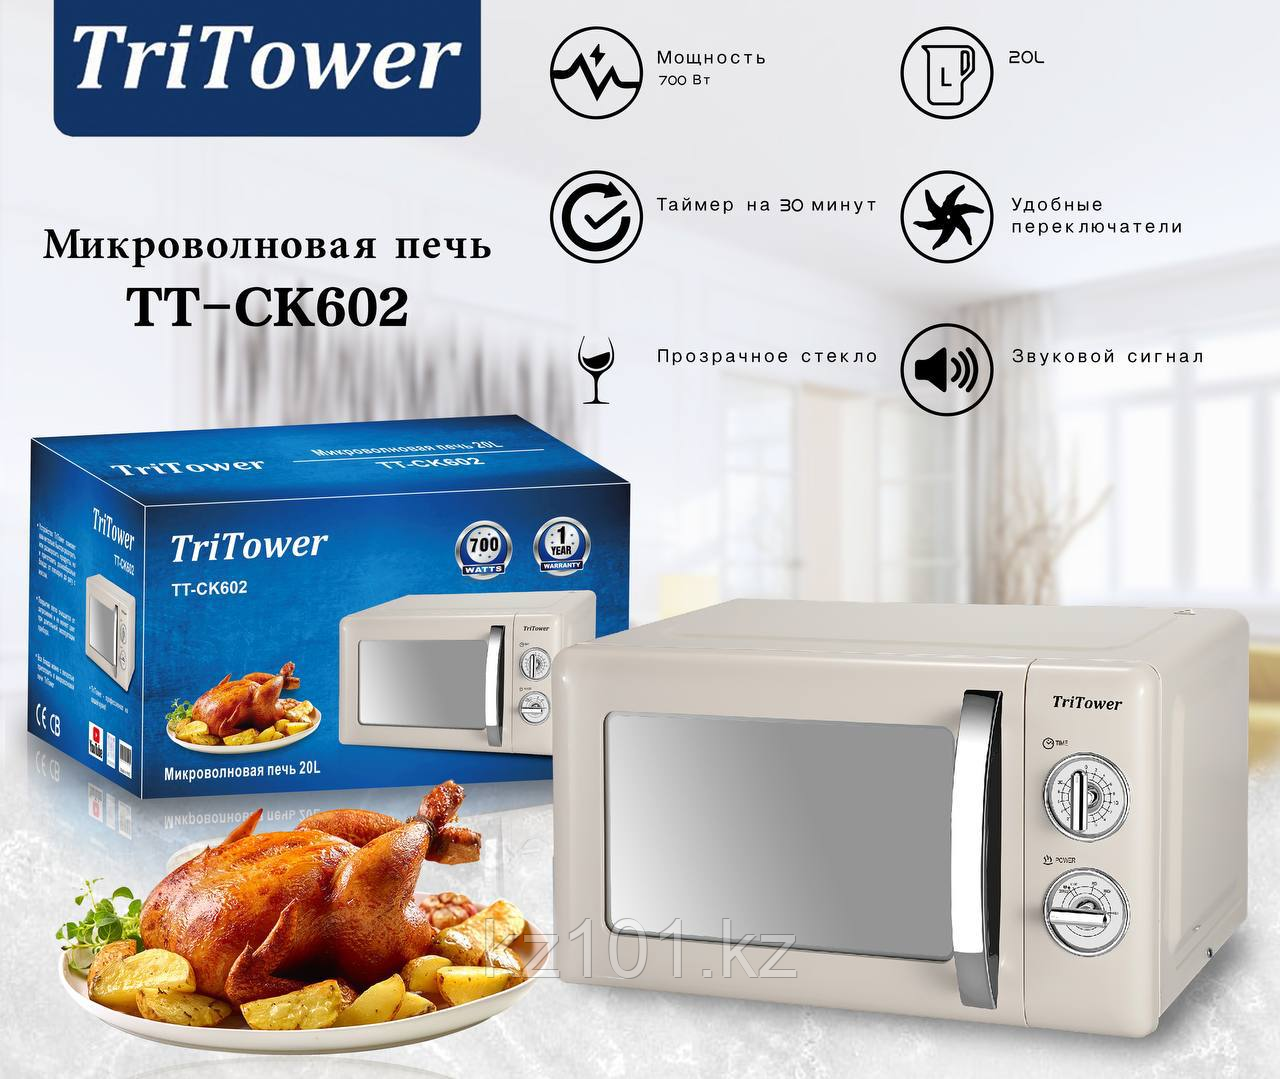 Микроволновая печь TriTower ТТ-СК 602